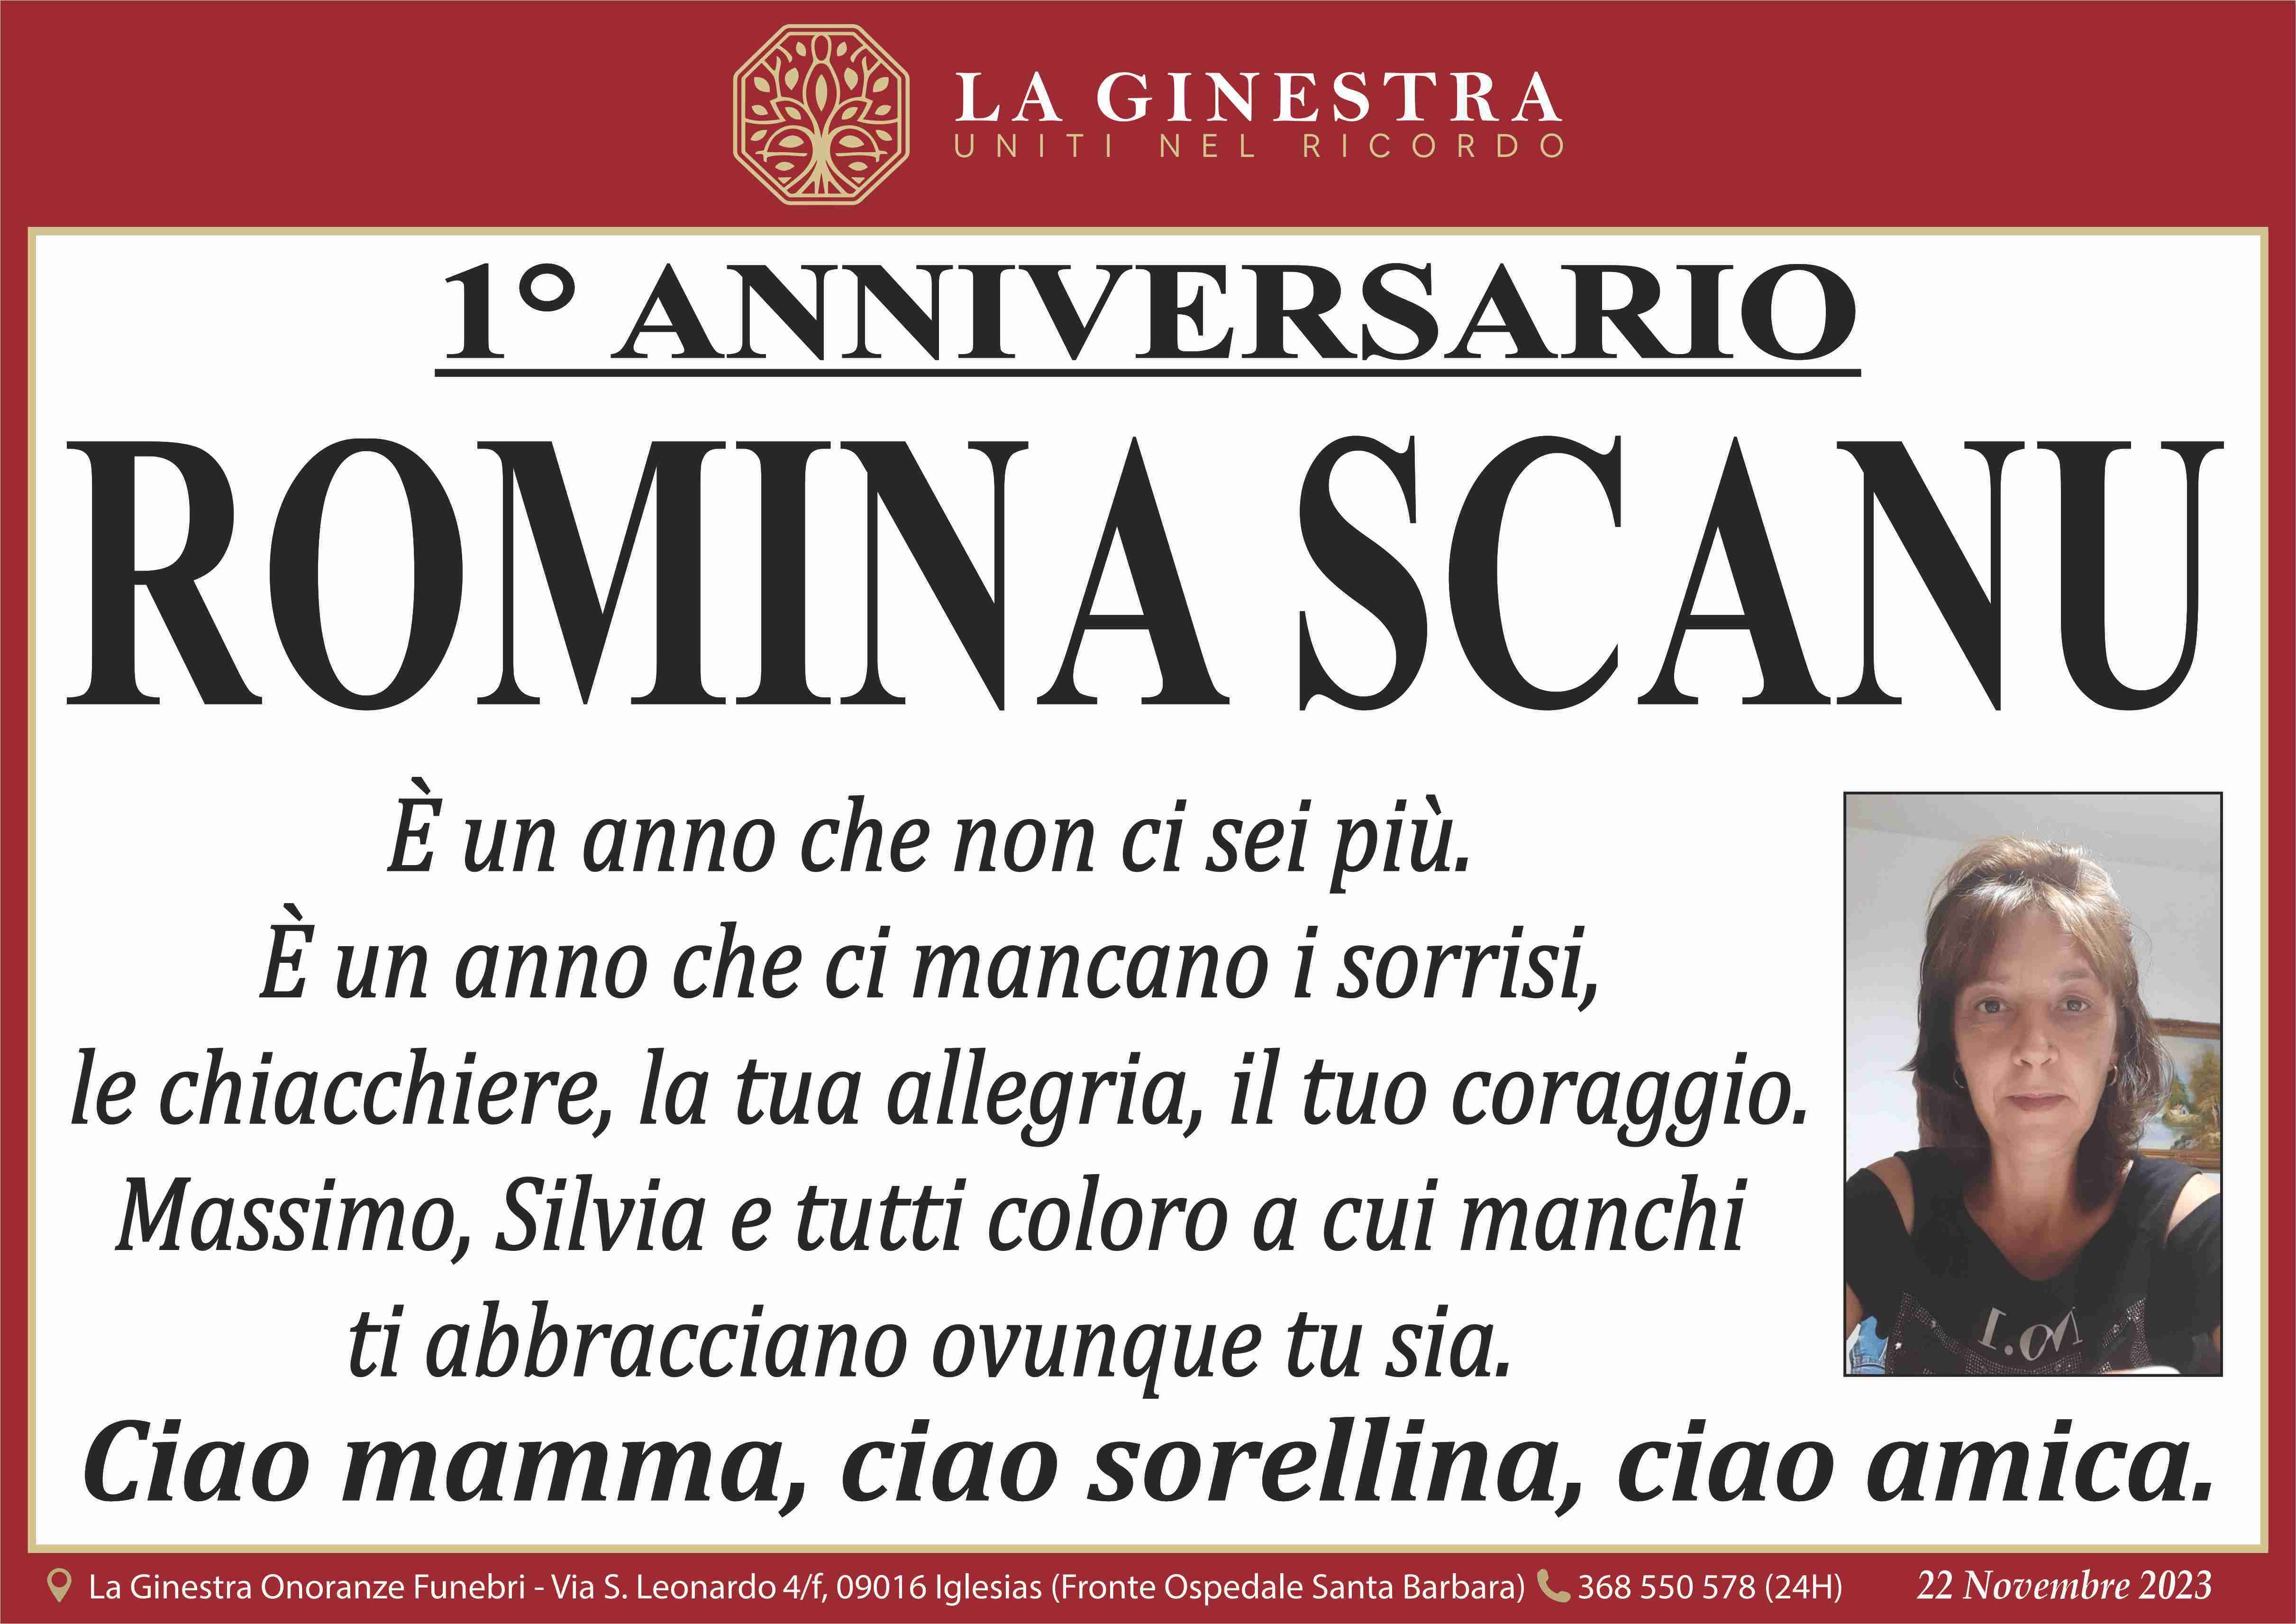 Romina Scano